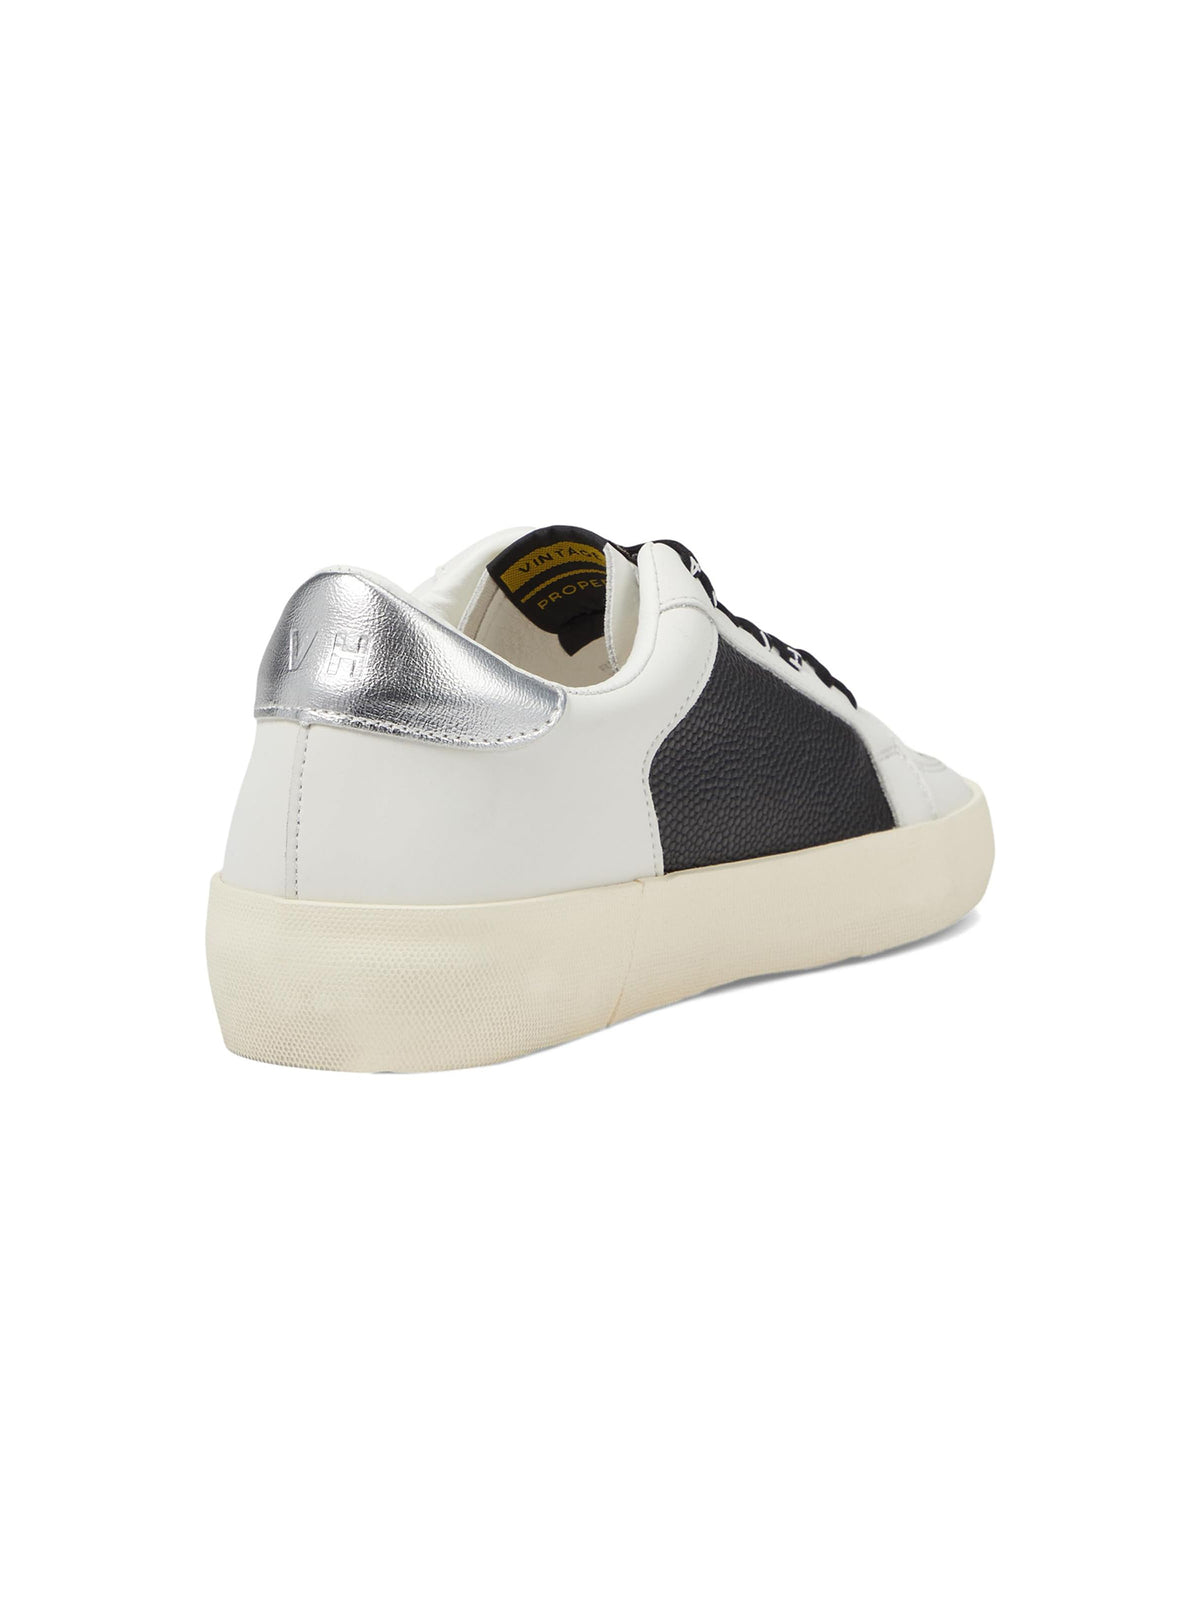 vintage havana reflex 19 sneakers in white black pebbled multi